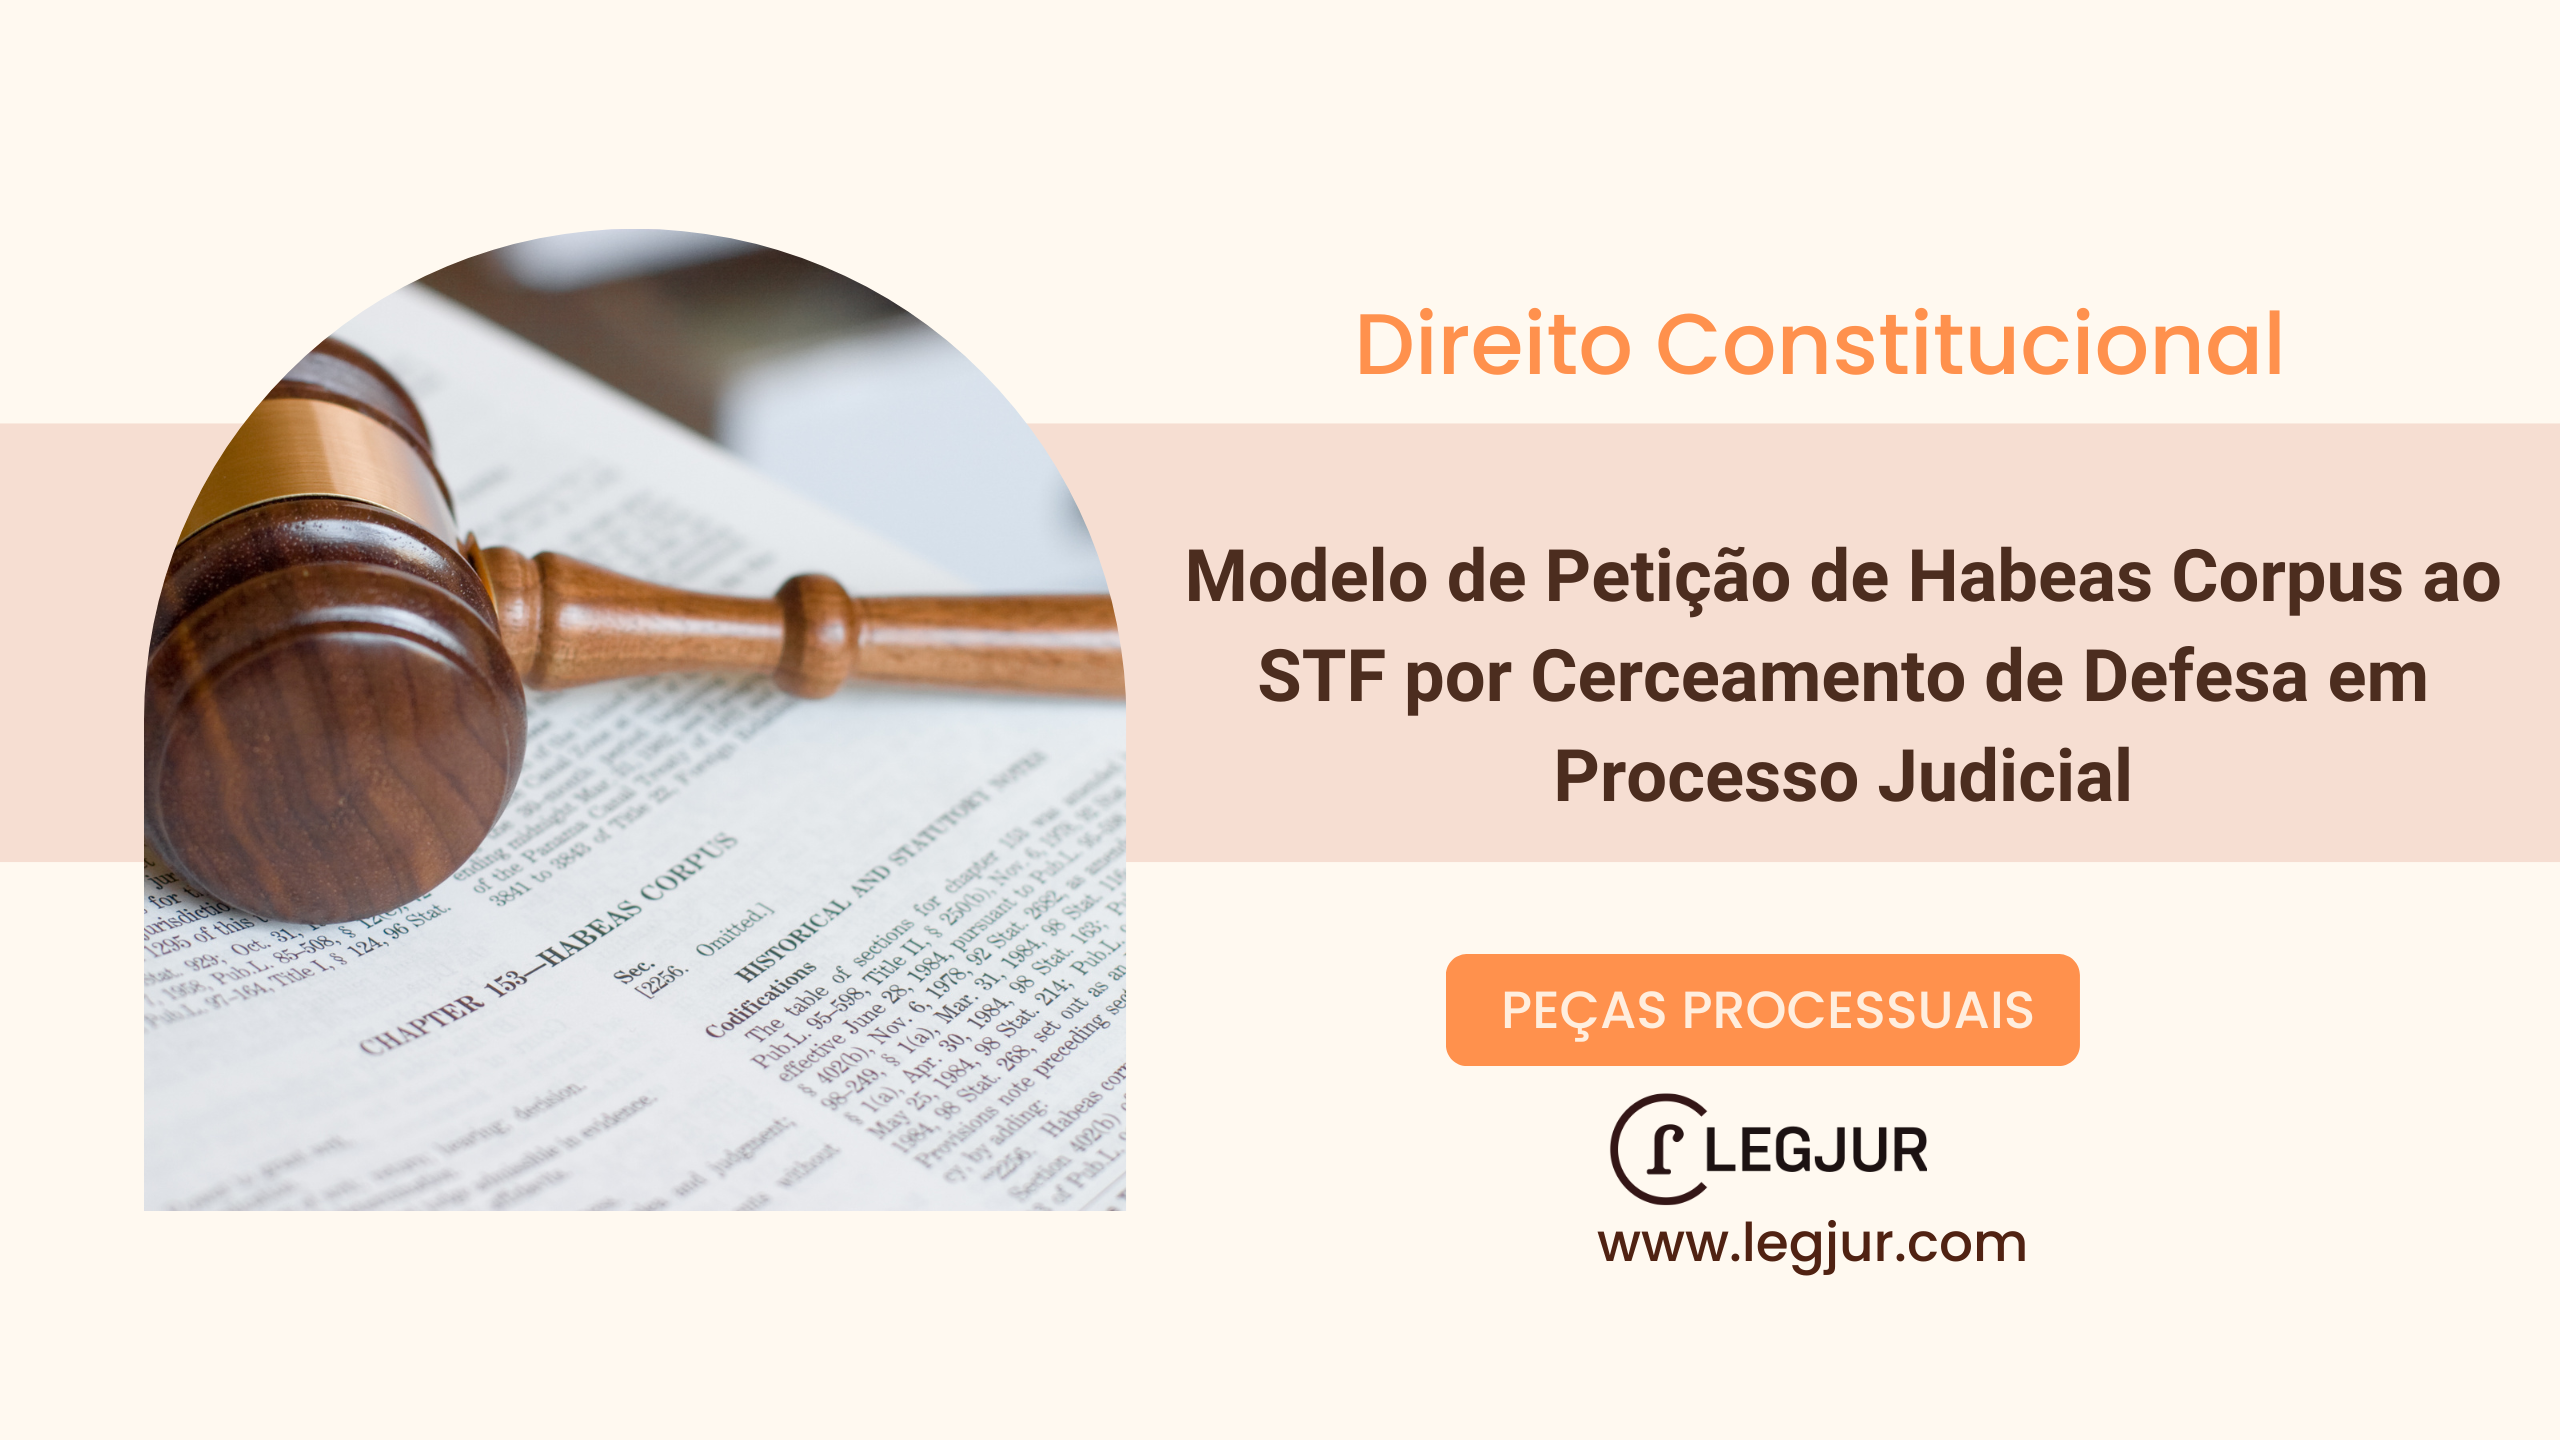 Modelo de Petição de Habeas Corpus ao STF por Cerceamento de Defesa em Processo Judicial